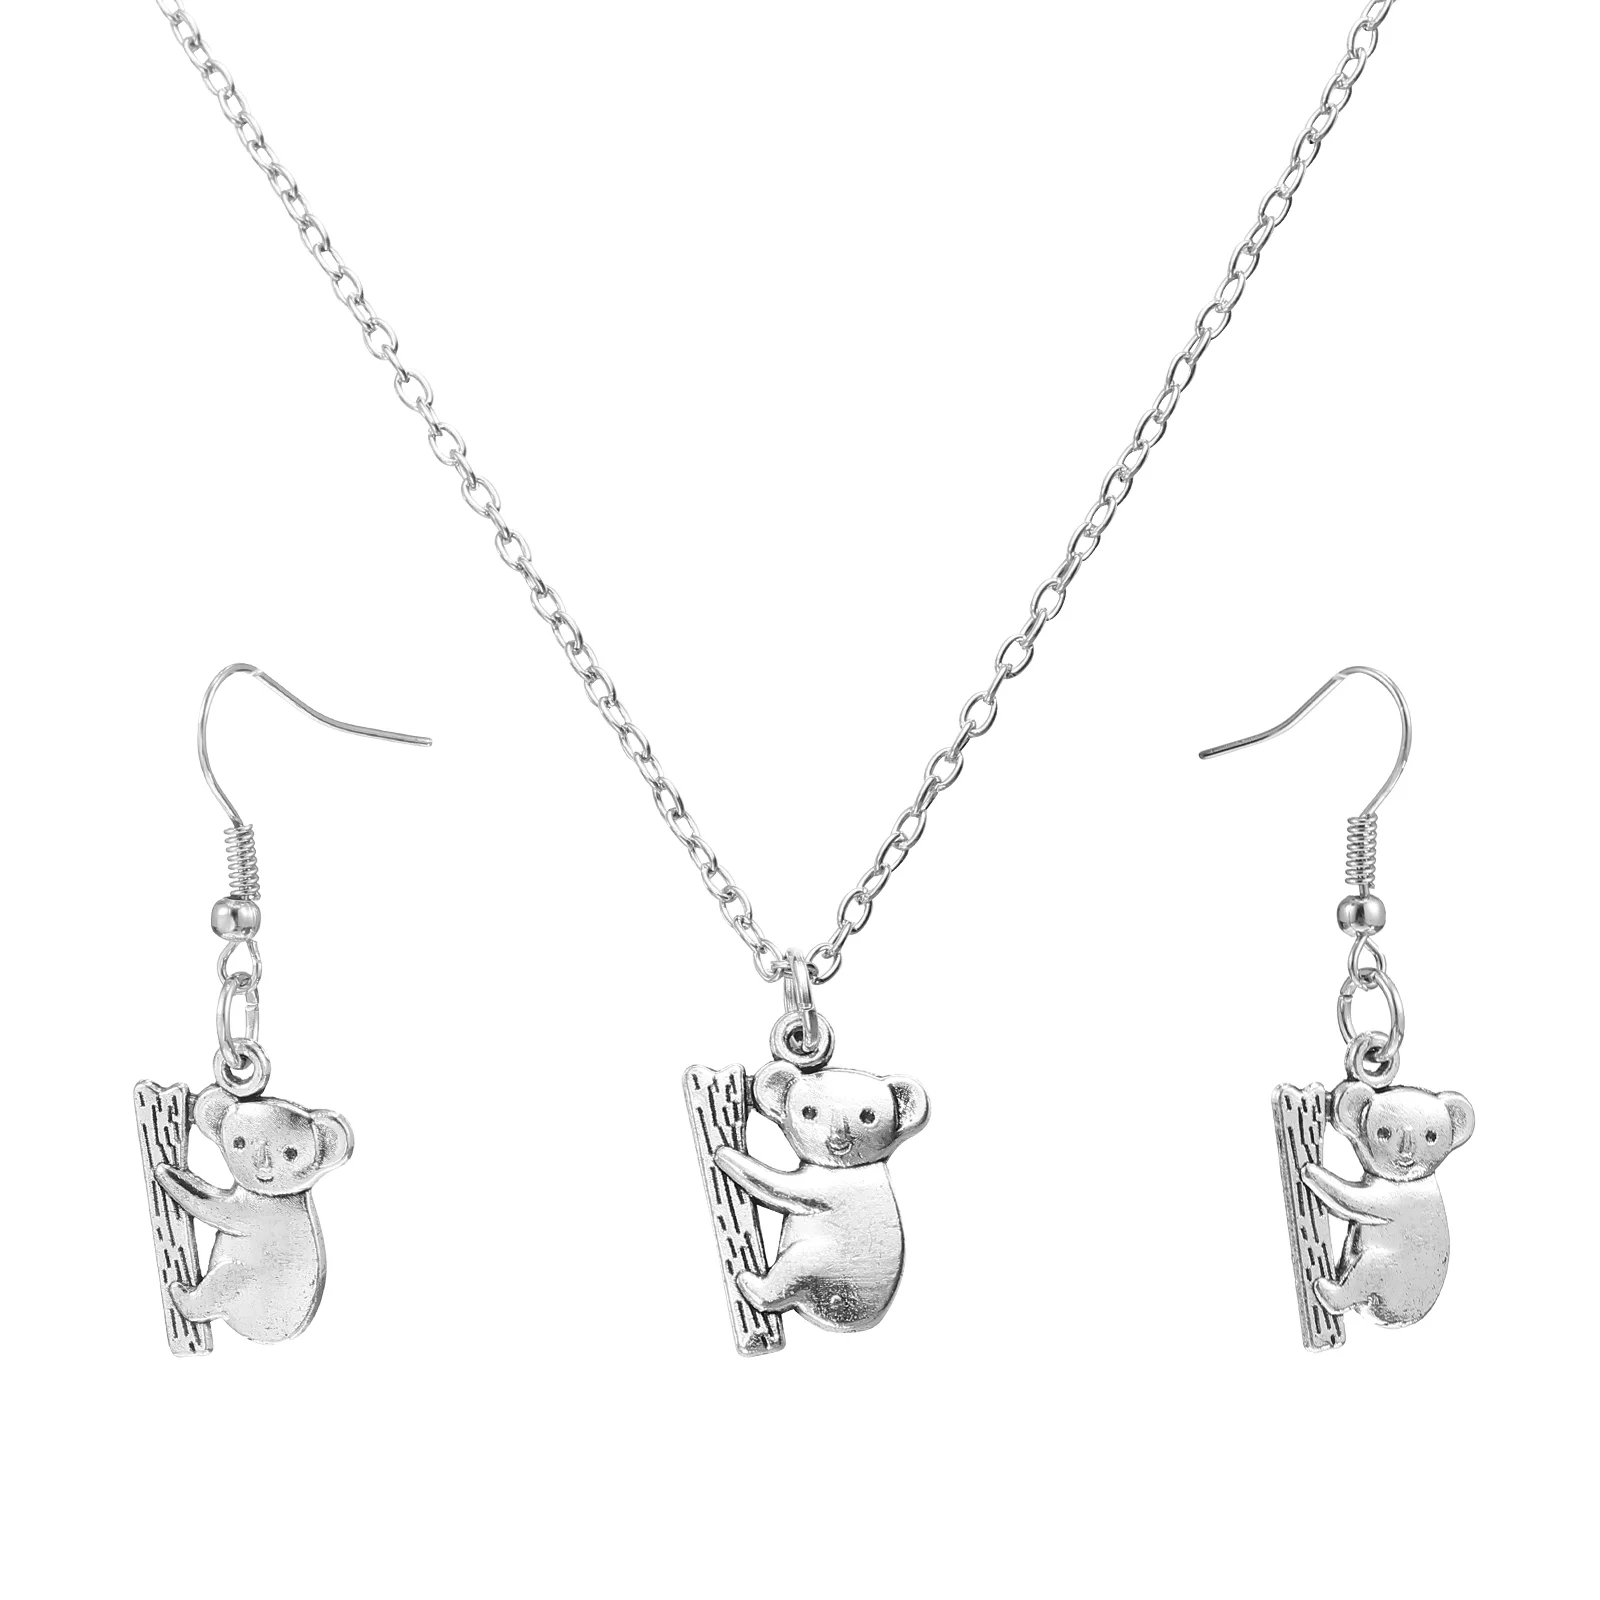 

Koala Necklace Earrings Animal Pendant Silver Drop Cute Jewelry Women Gifts Chain Stud Stainless Steel